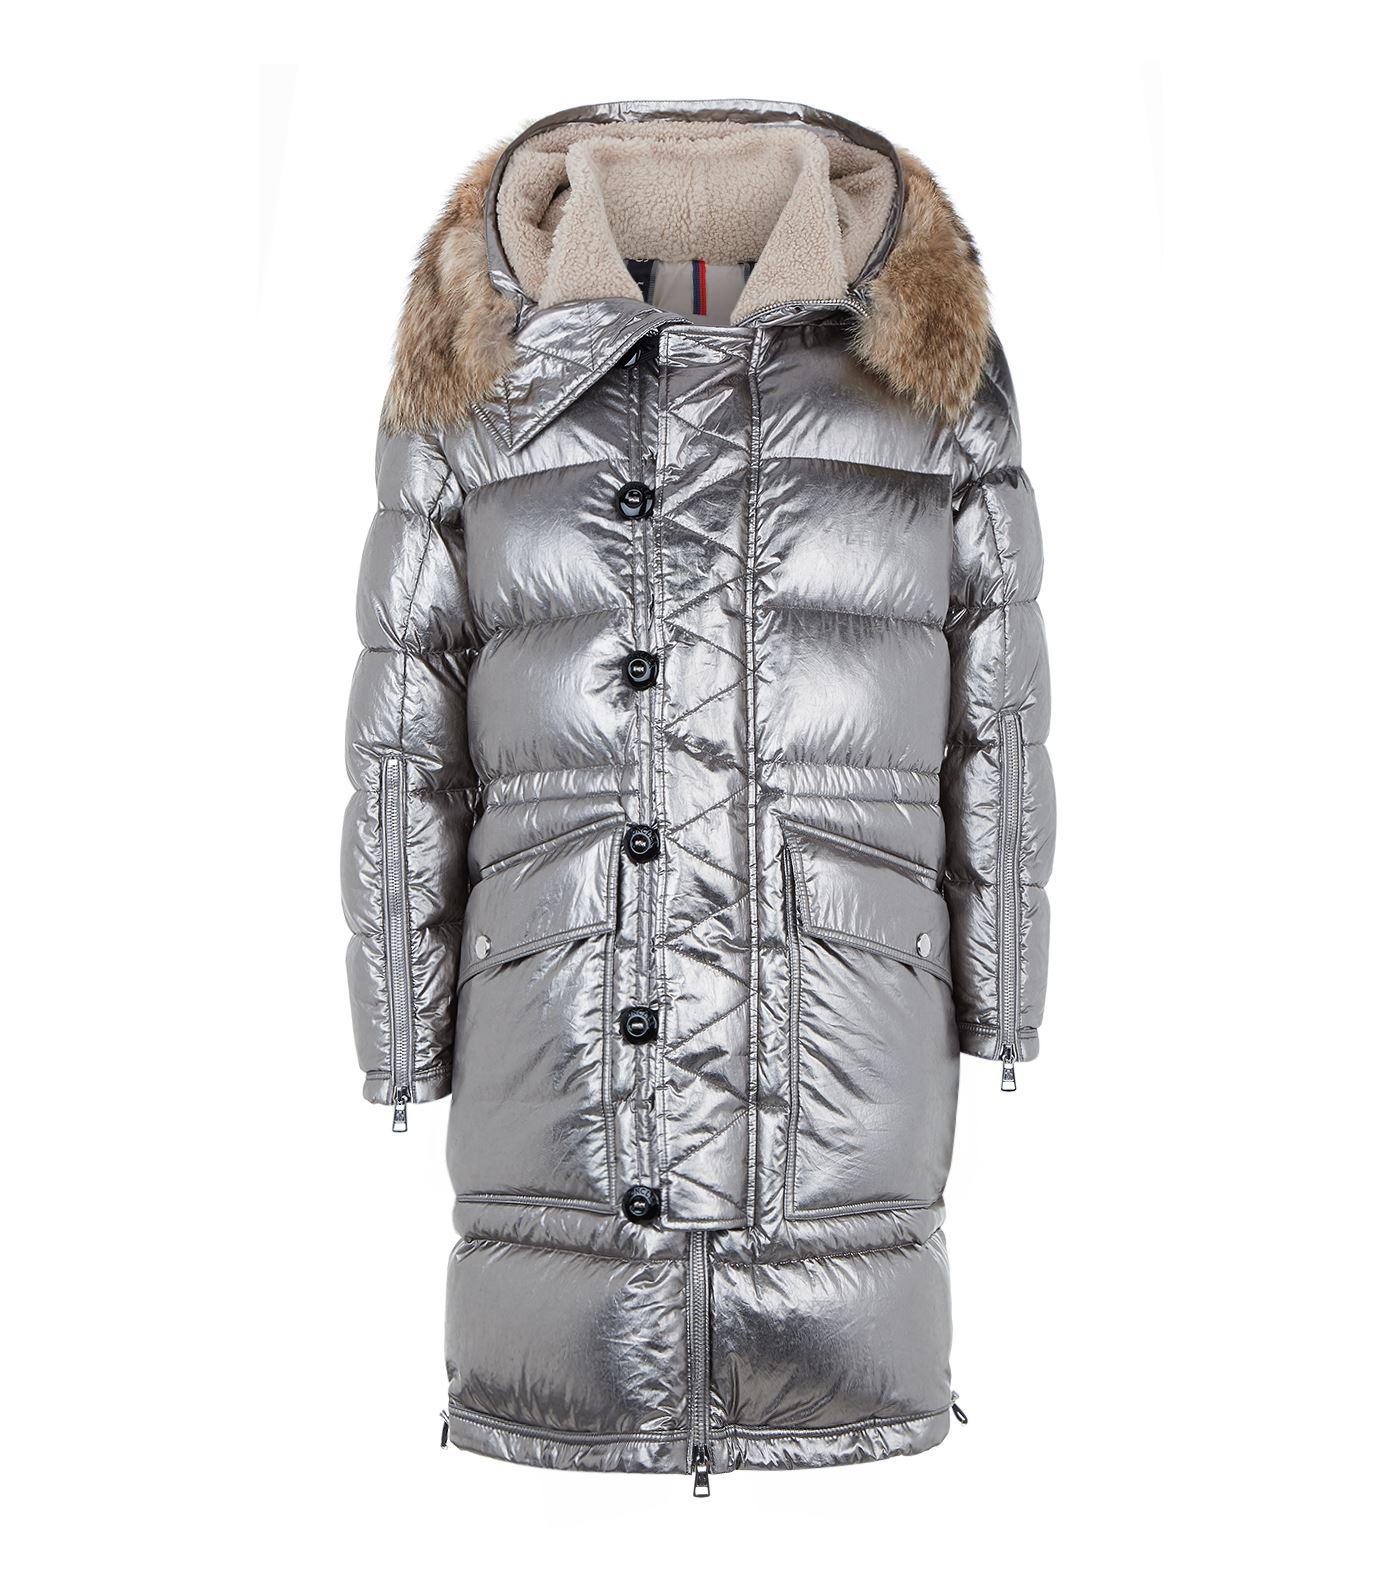 Moncler Inuit Fur Trim Jacket in Silver (Metallic) - Lyst